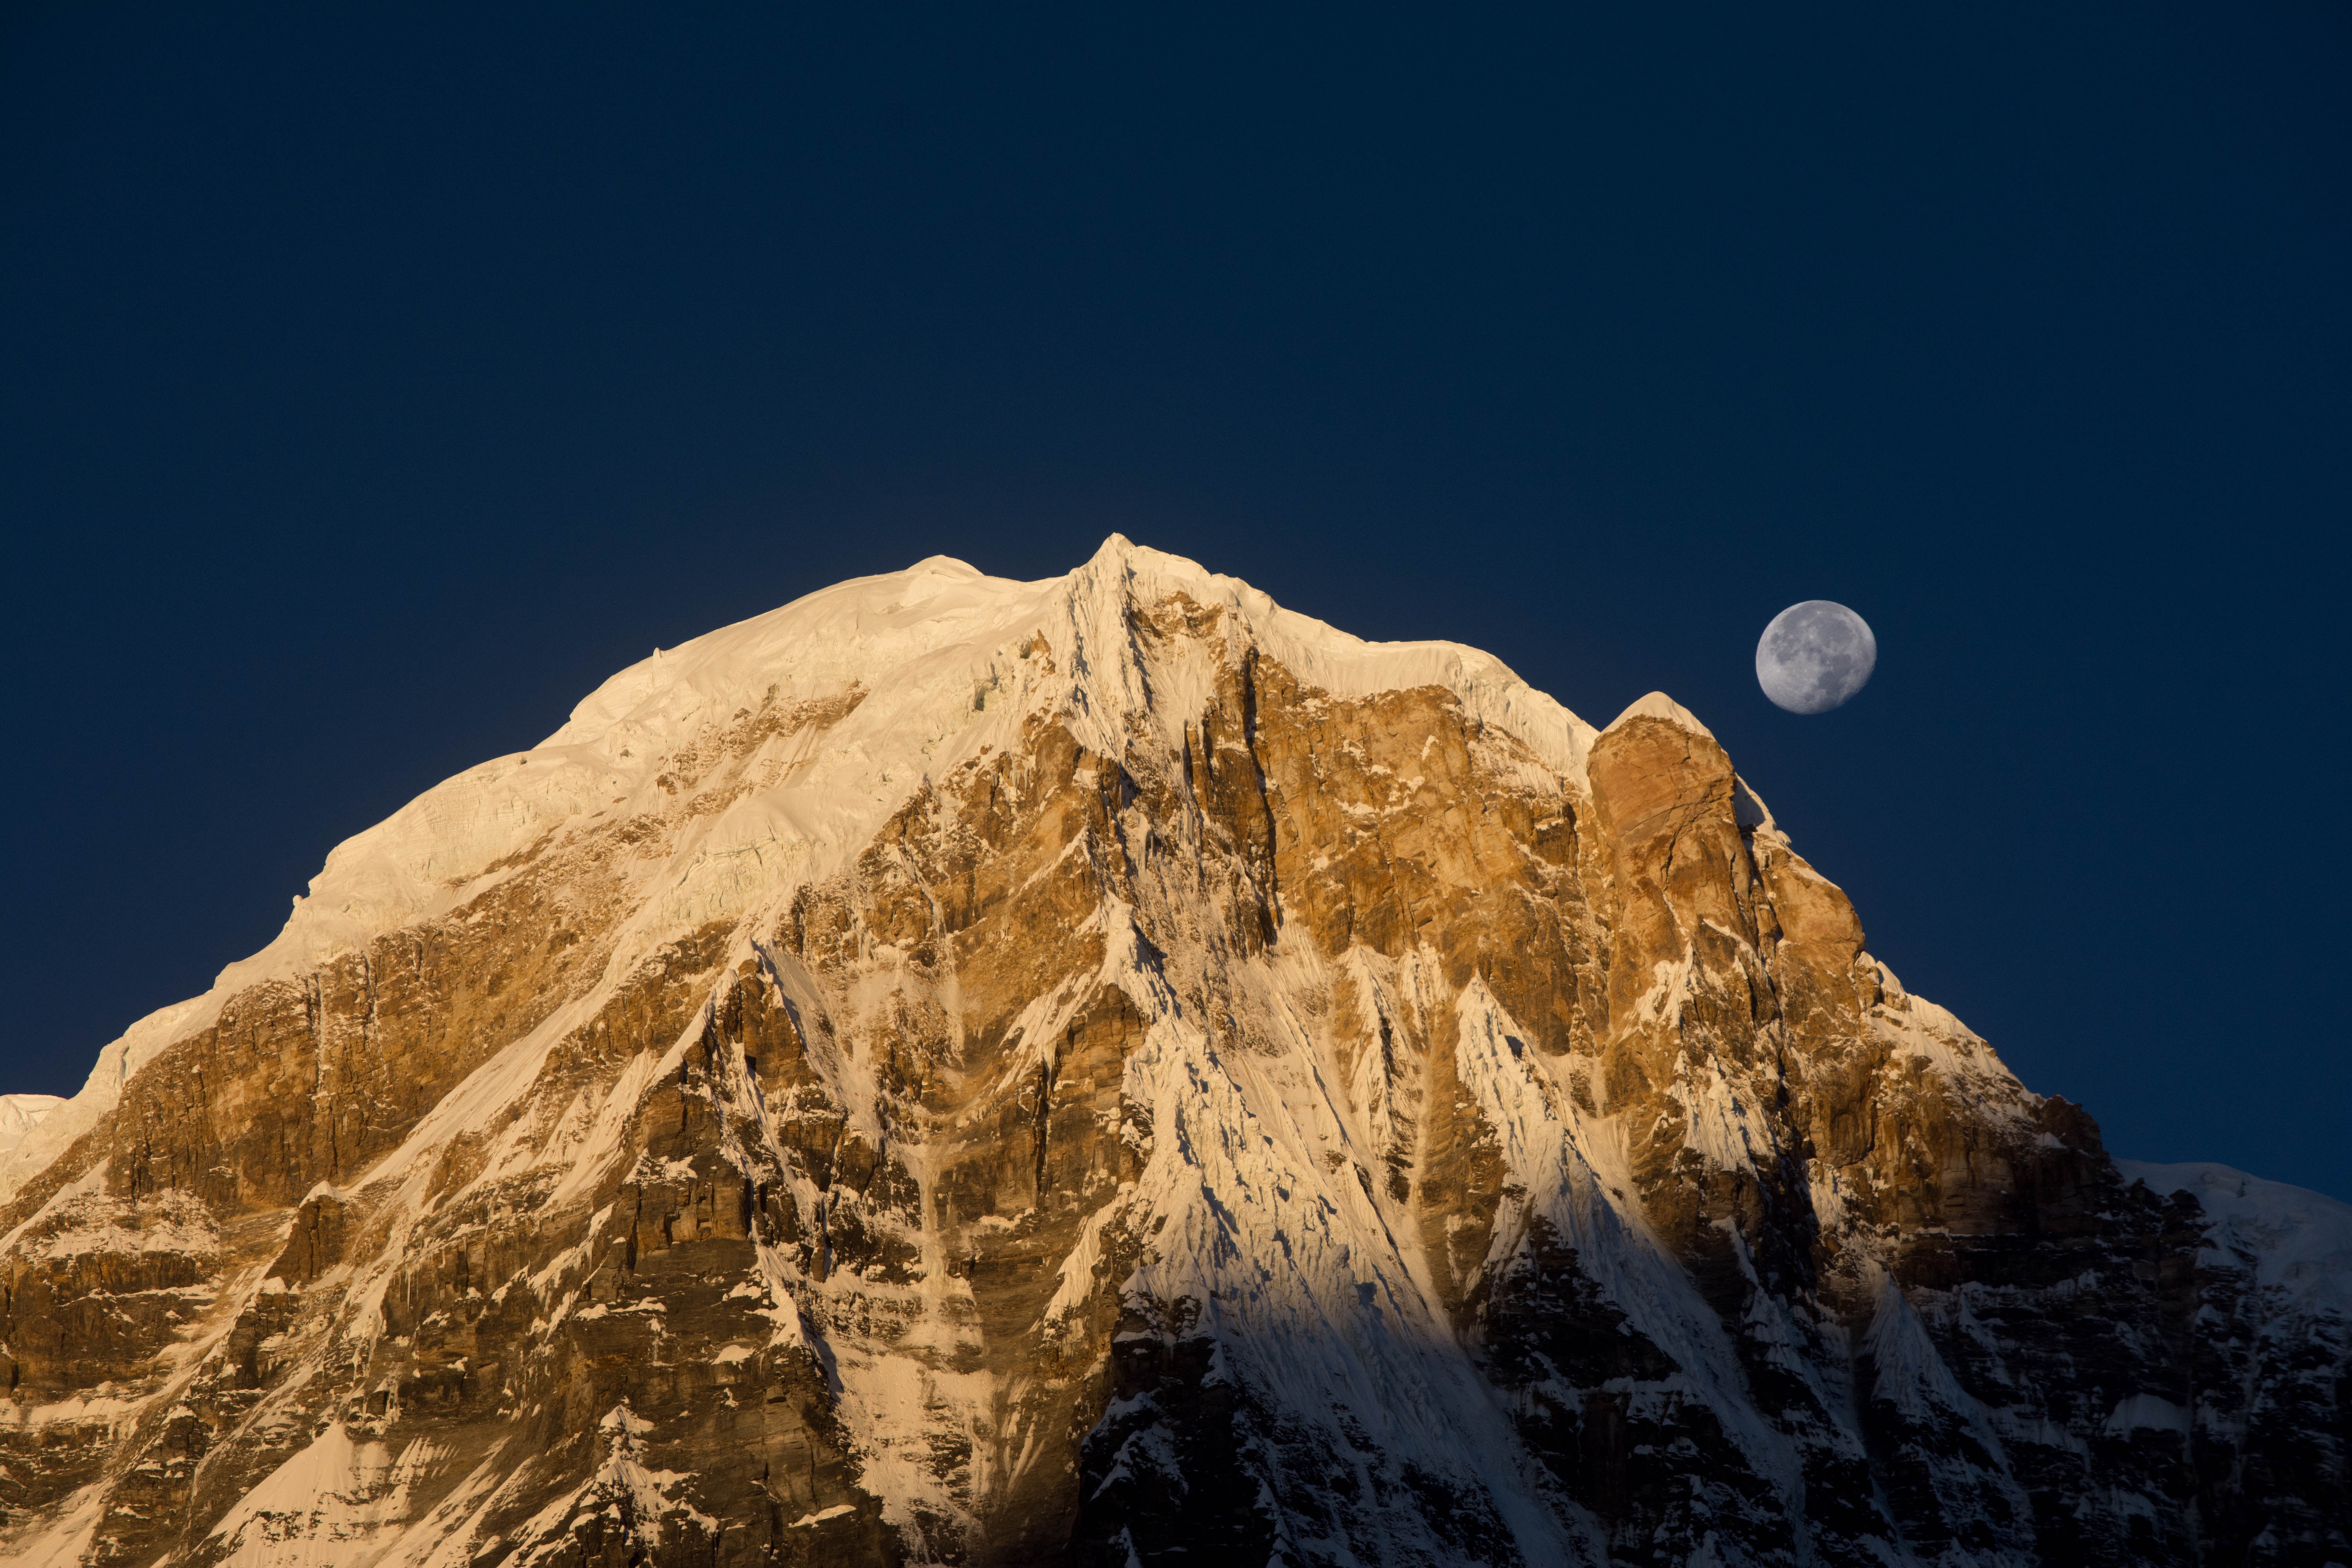 Moonrise over a mountain